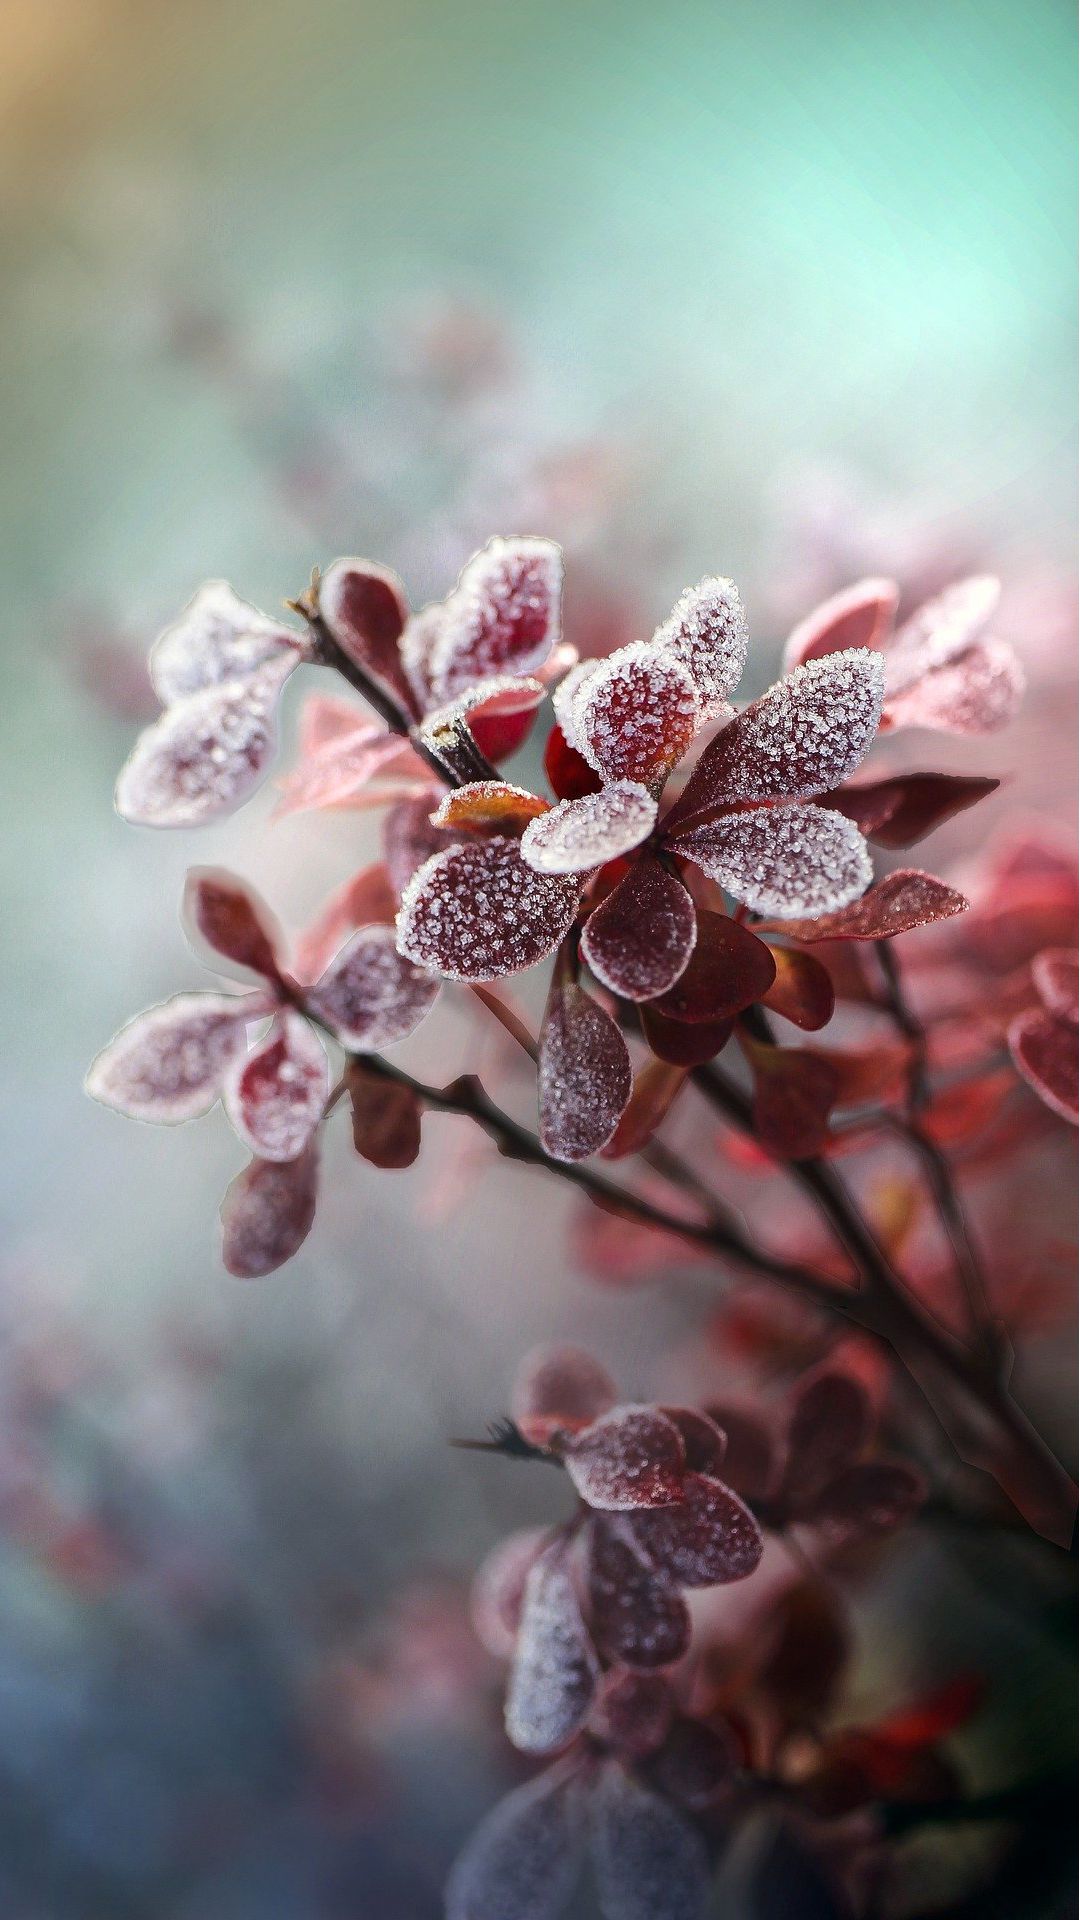 霜冻植物日本小檗 叶子高清微距手机摄影壁纸图片 寒霜